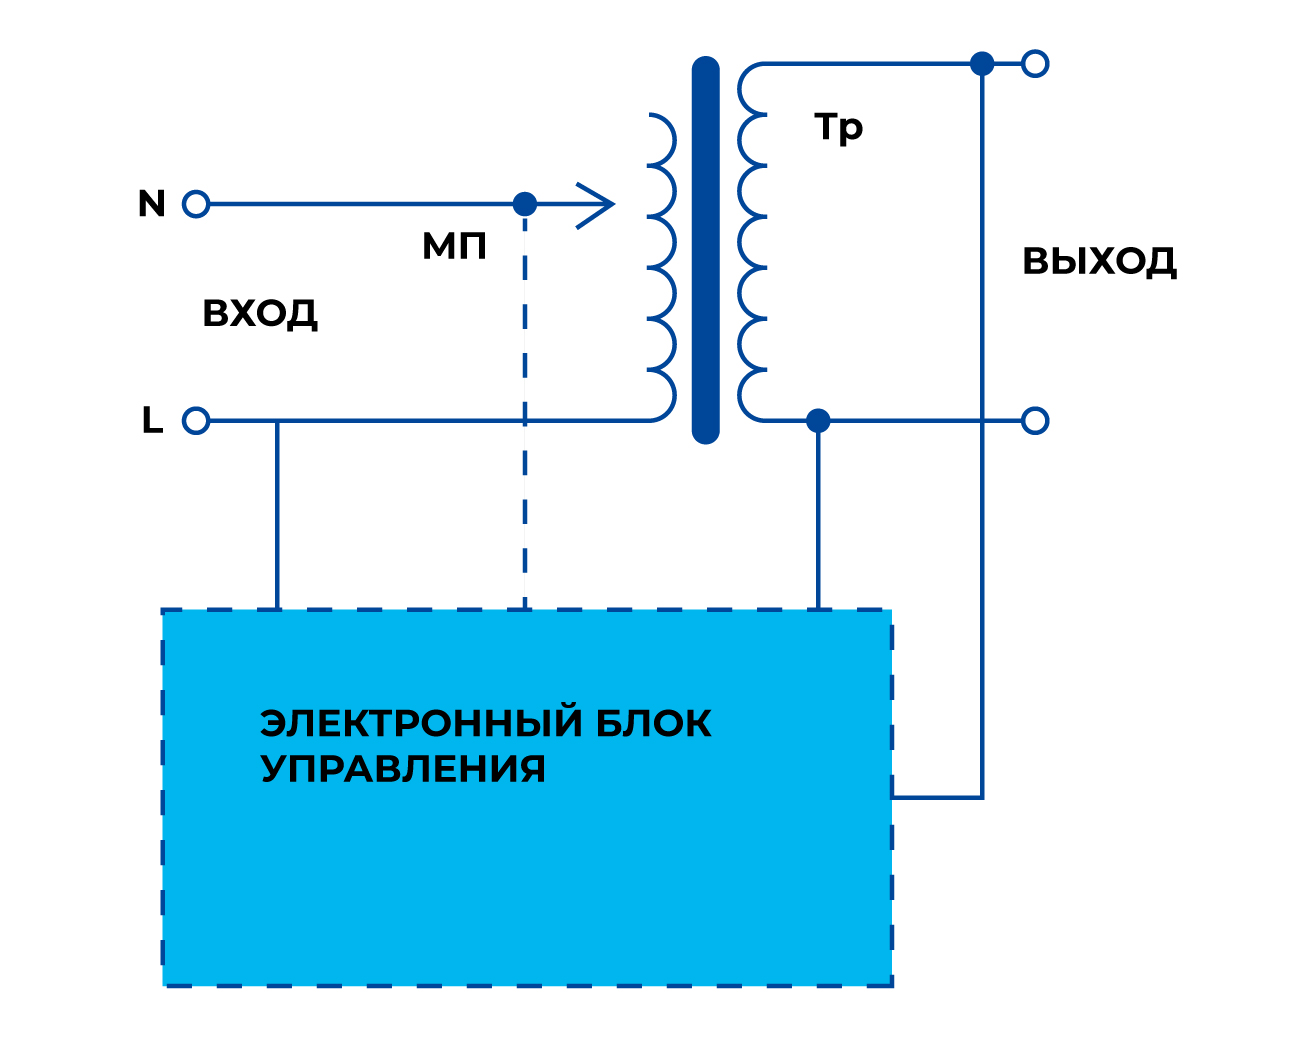 Принципиальная схема сетевого электромеханического стабилизатора напряжения, упрощенная схема сетевого стабилизатора электромеханического типа